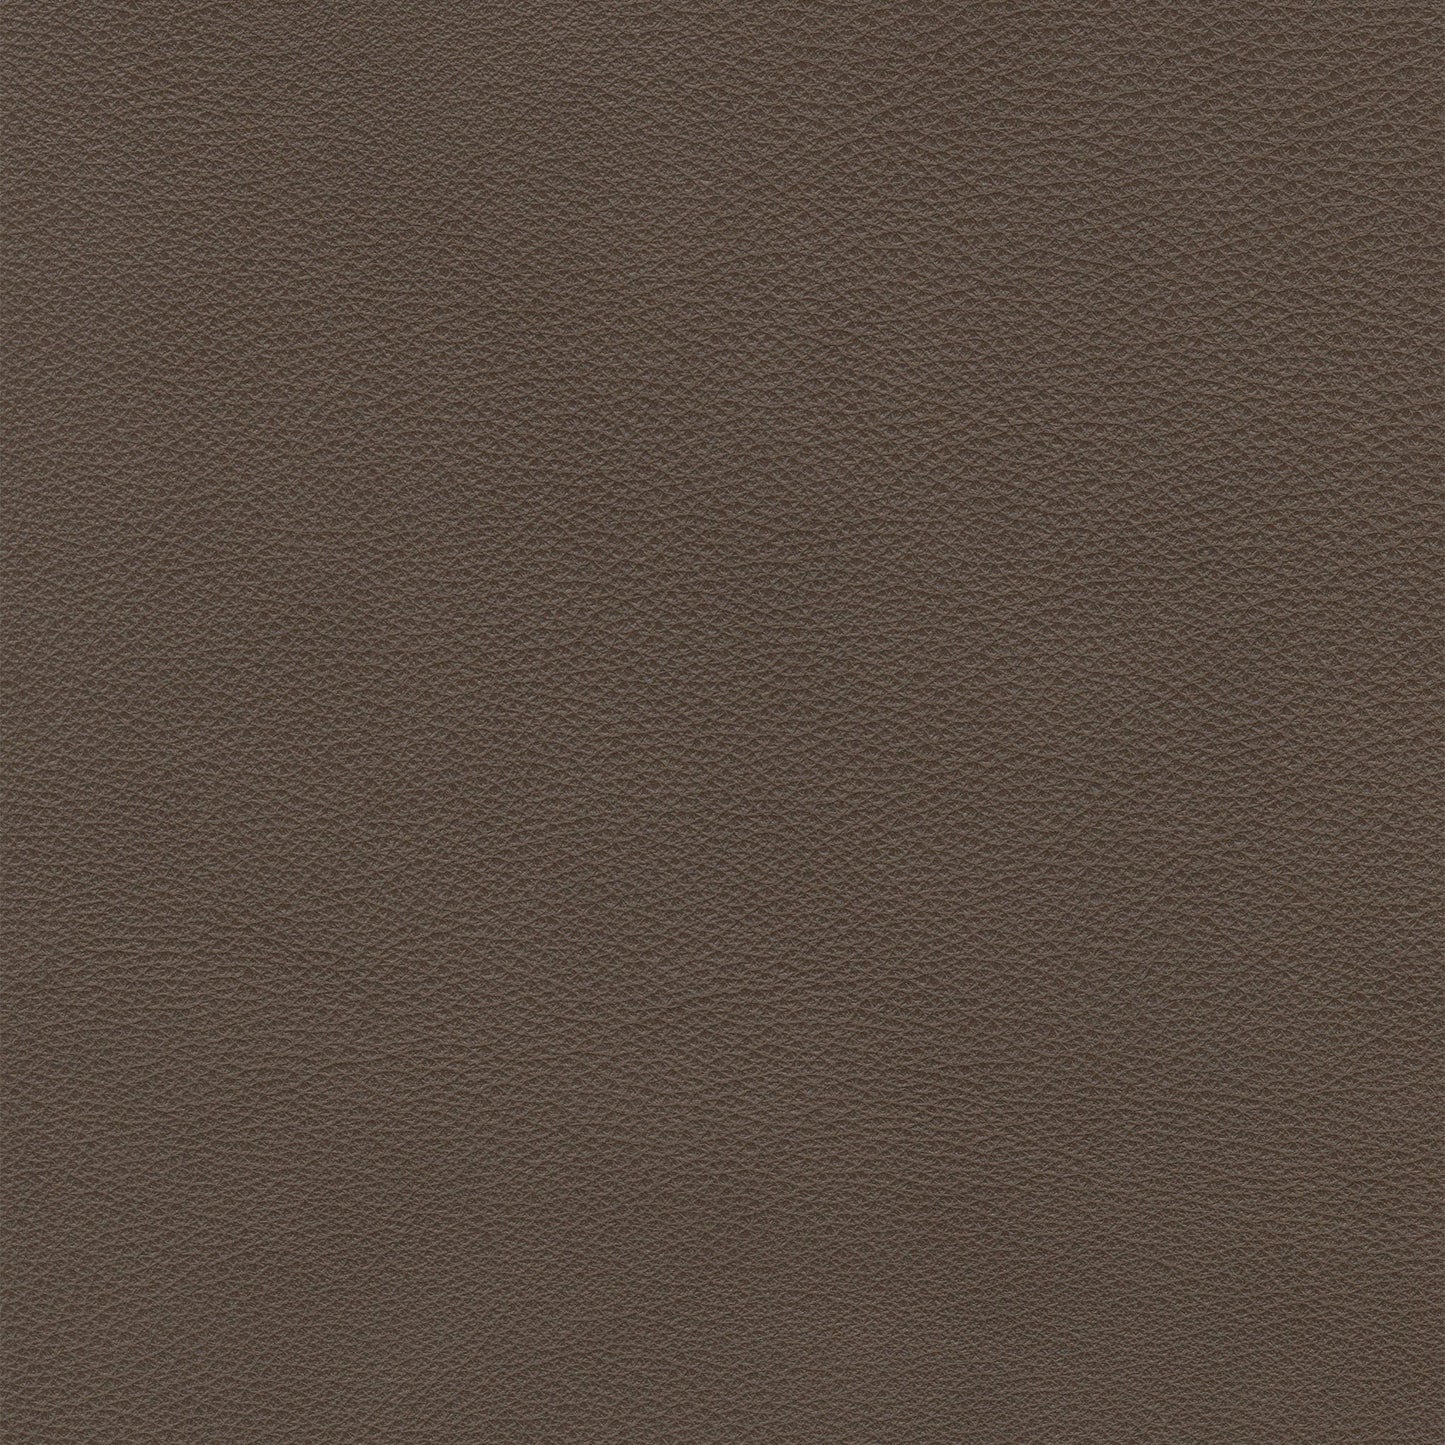 Weston Truffle Leather